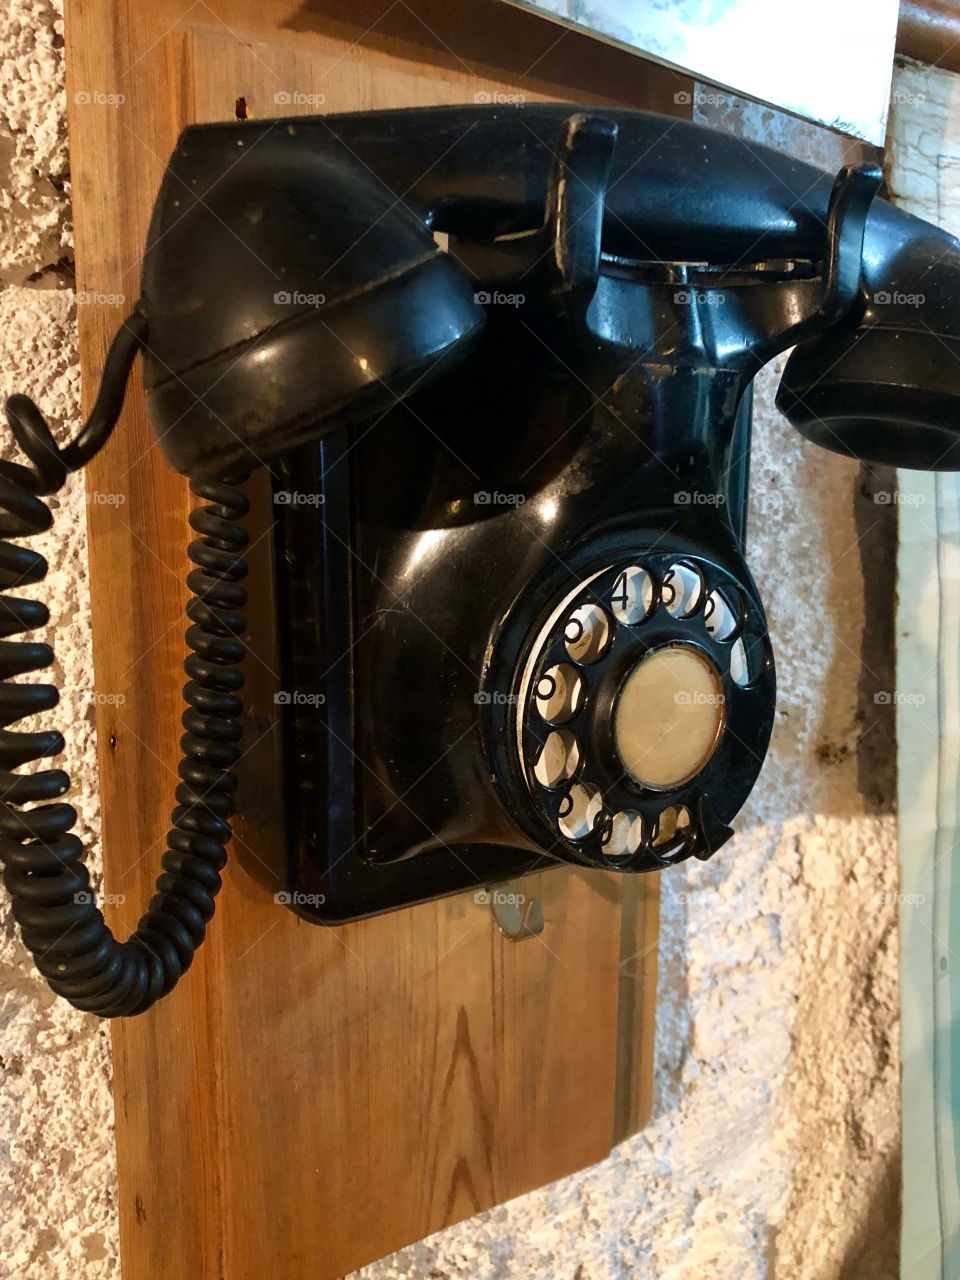 Antique phone 